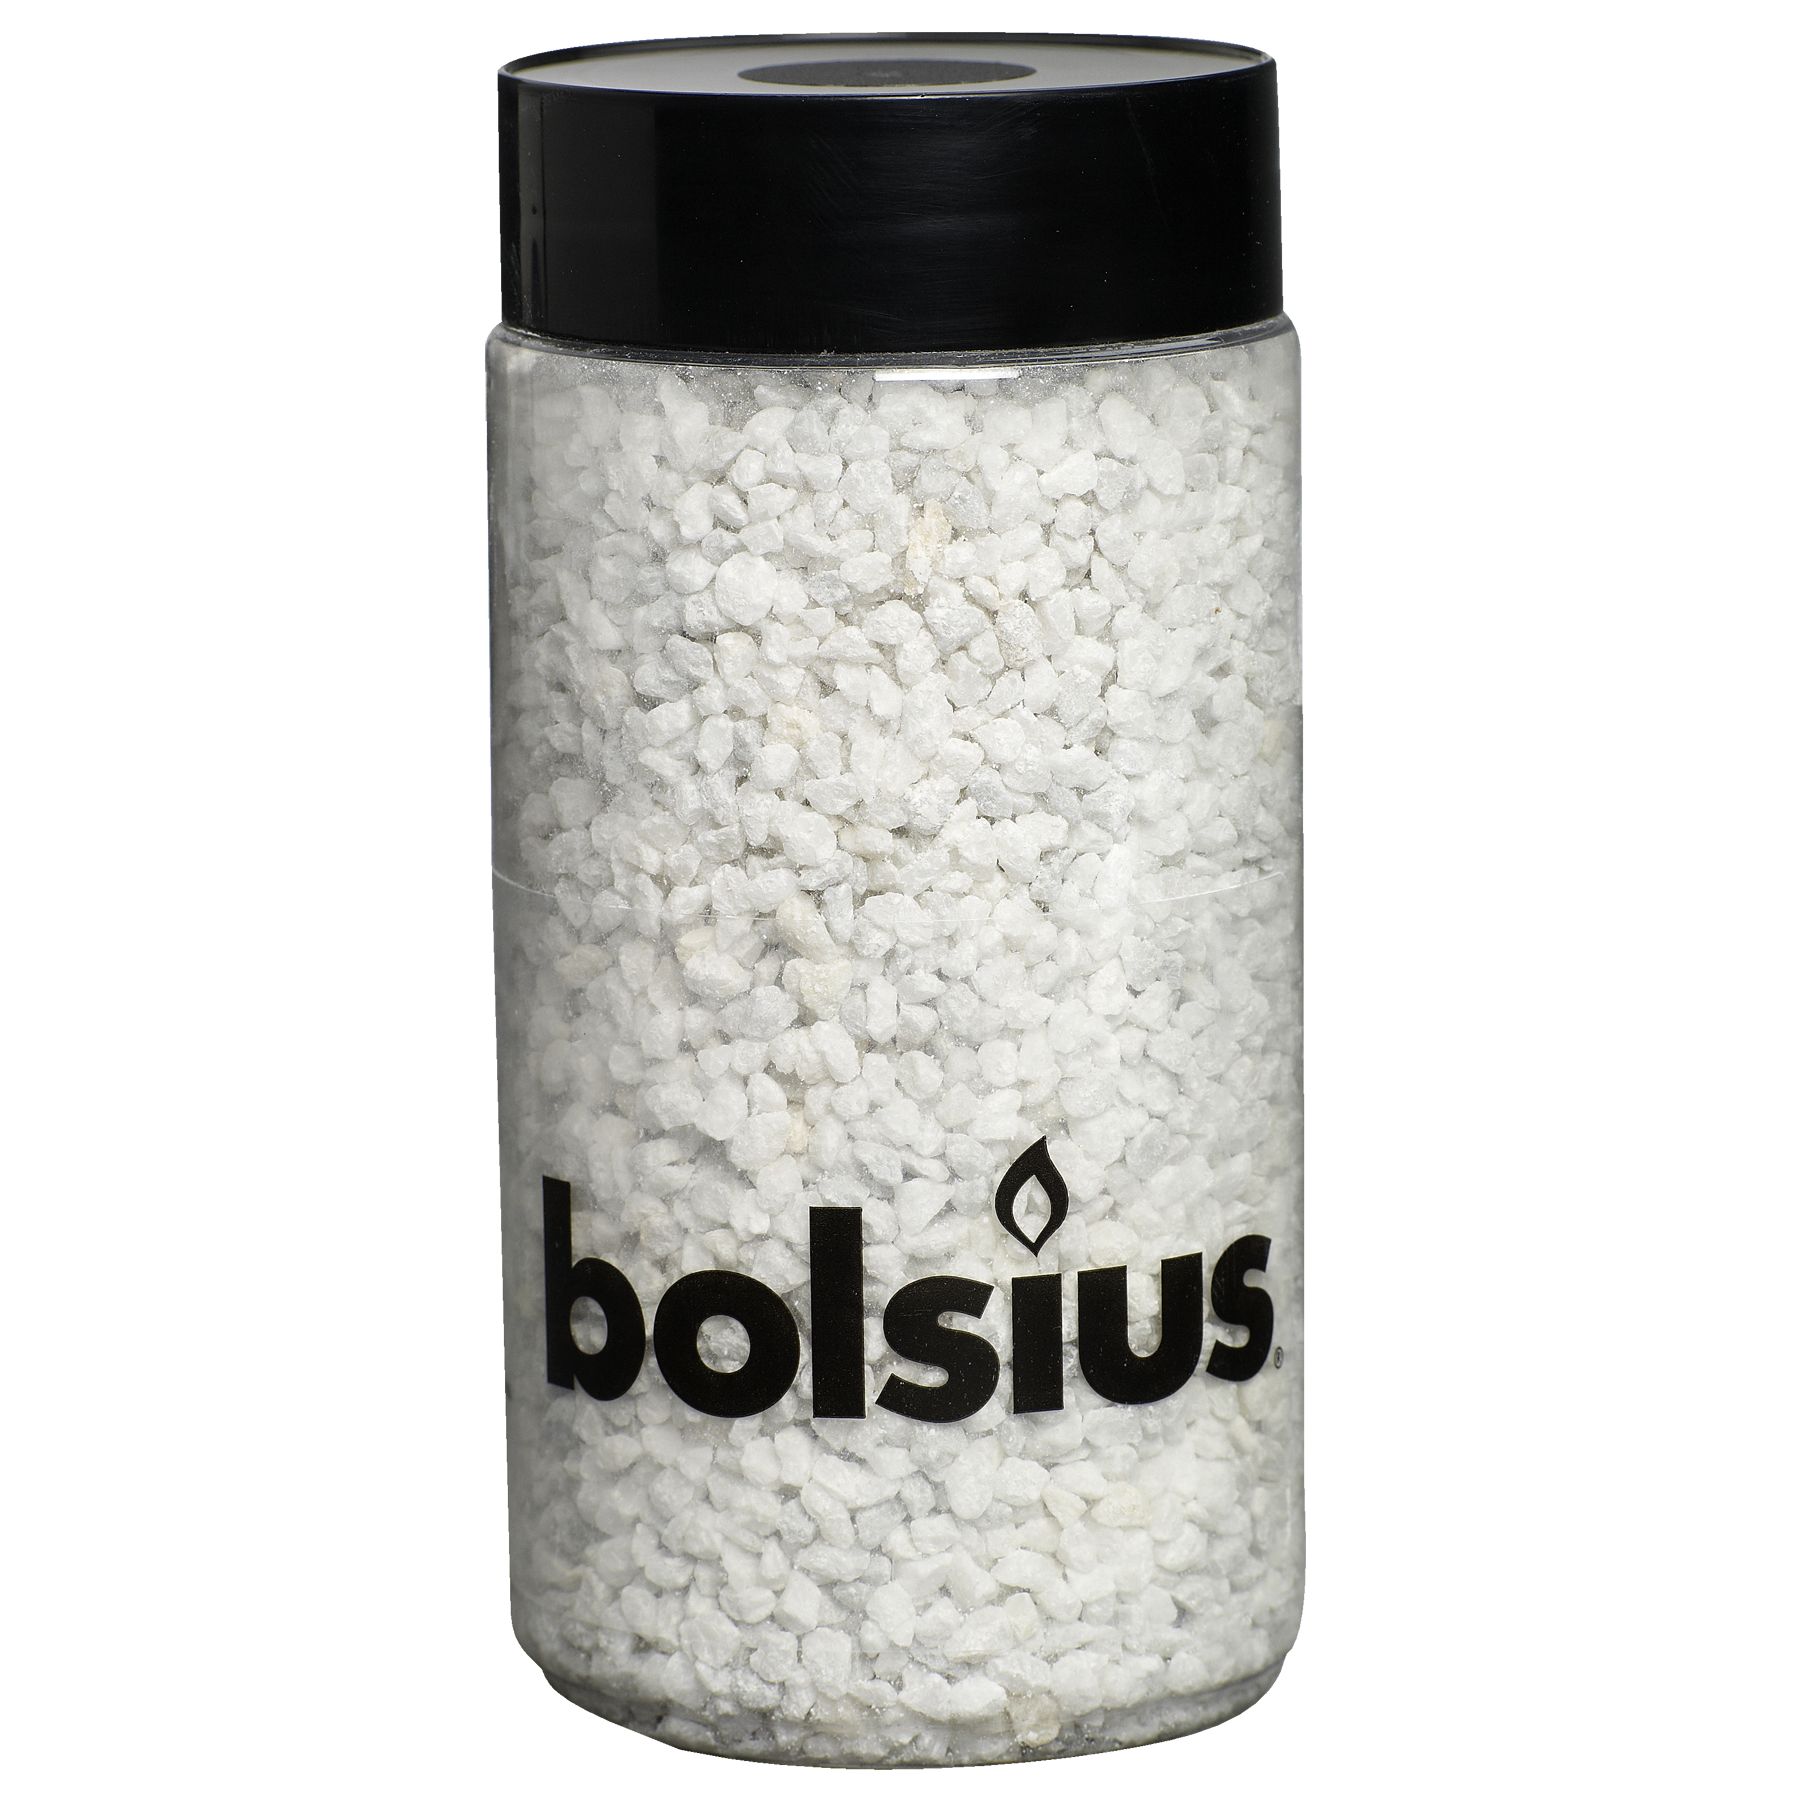 Dekorační kamínky BOLSIUS bílé 2-3mm, 600g